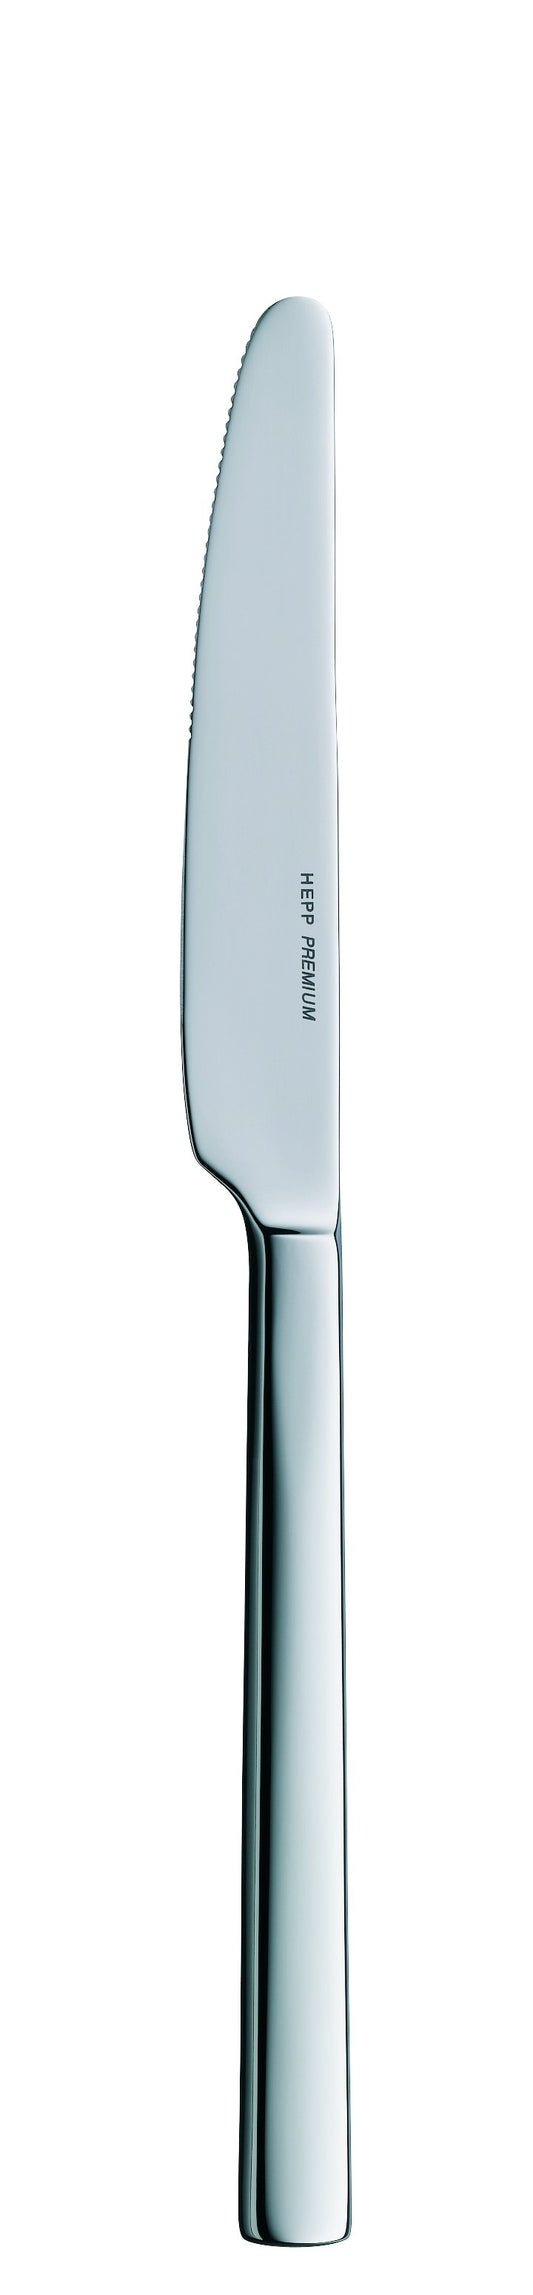 Dessert knife MB LENTO 221mm